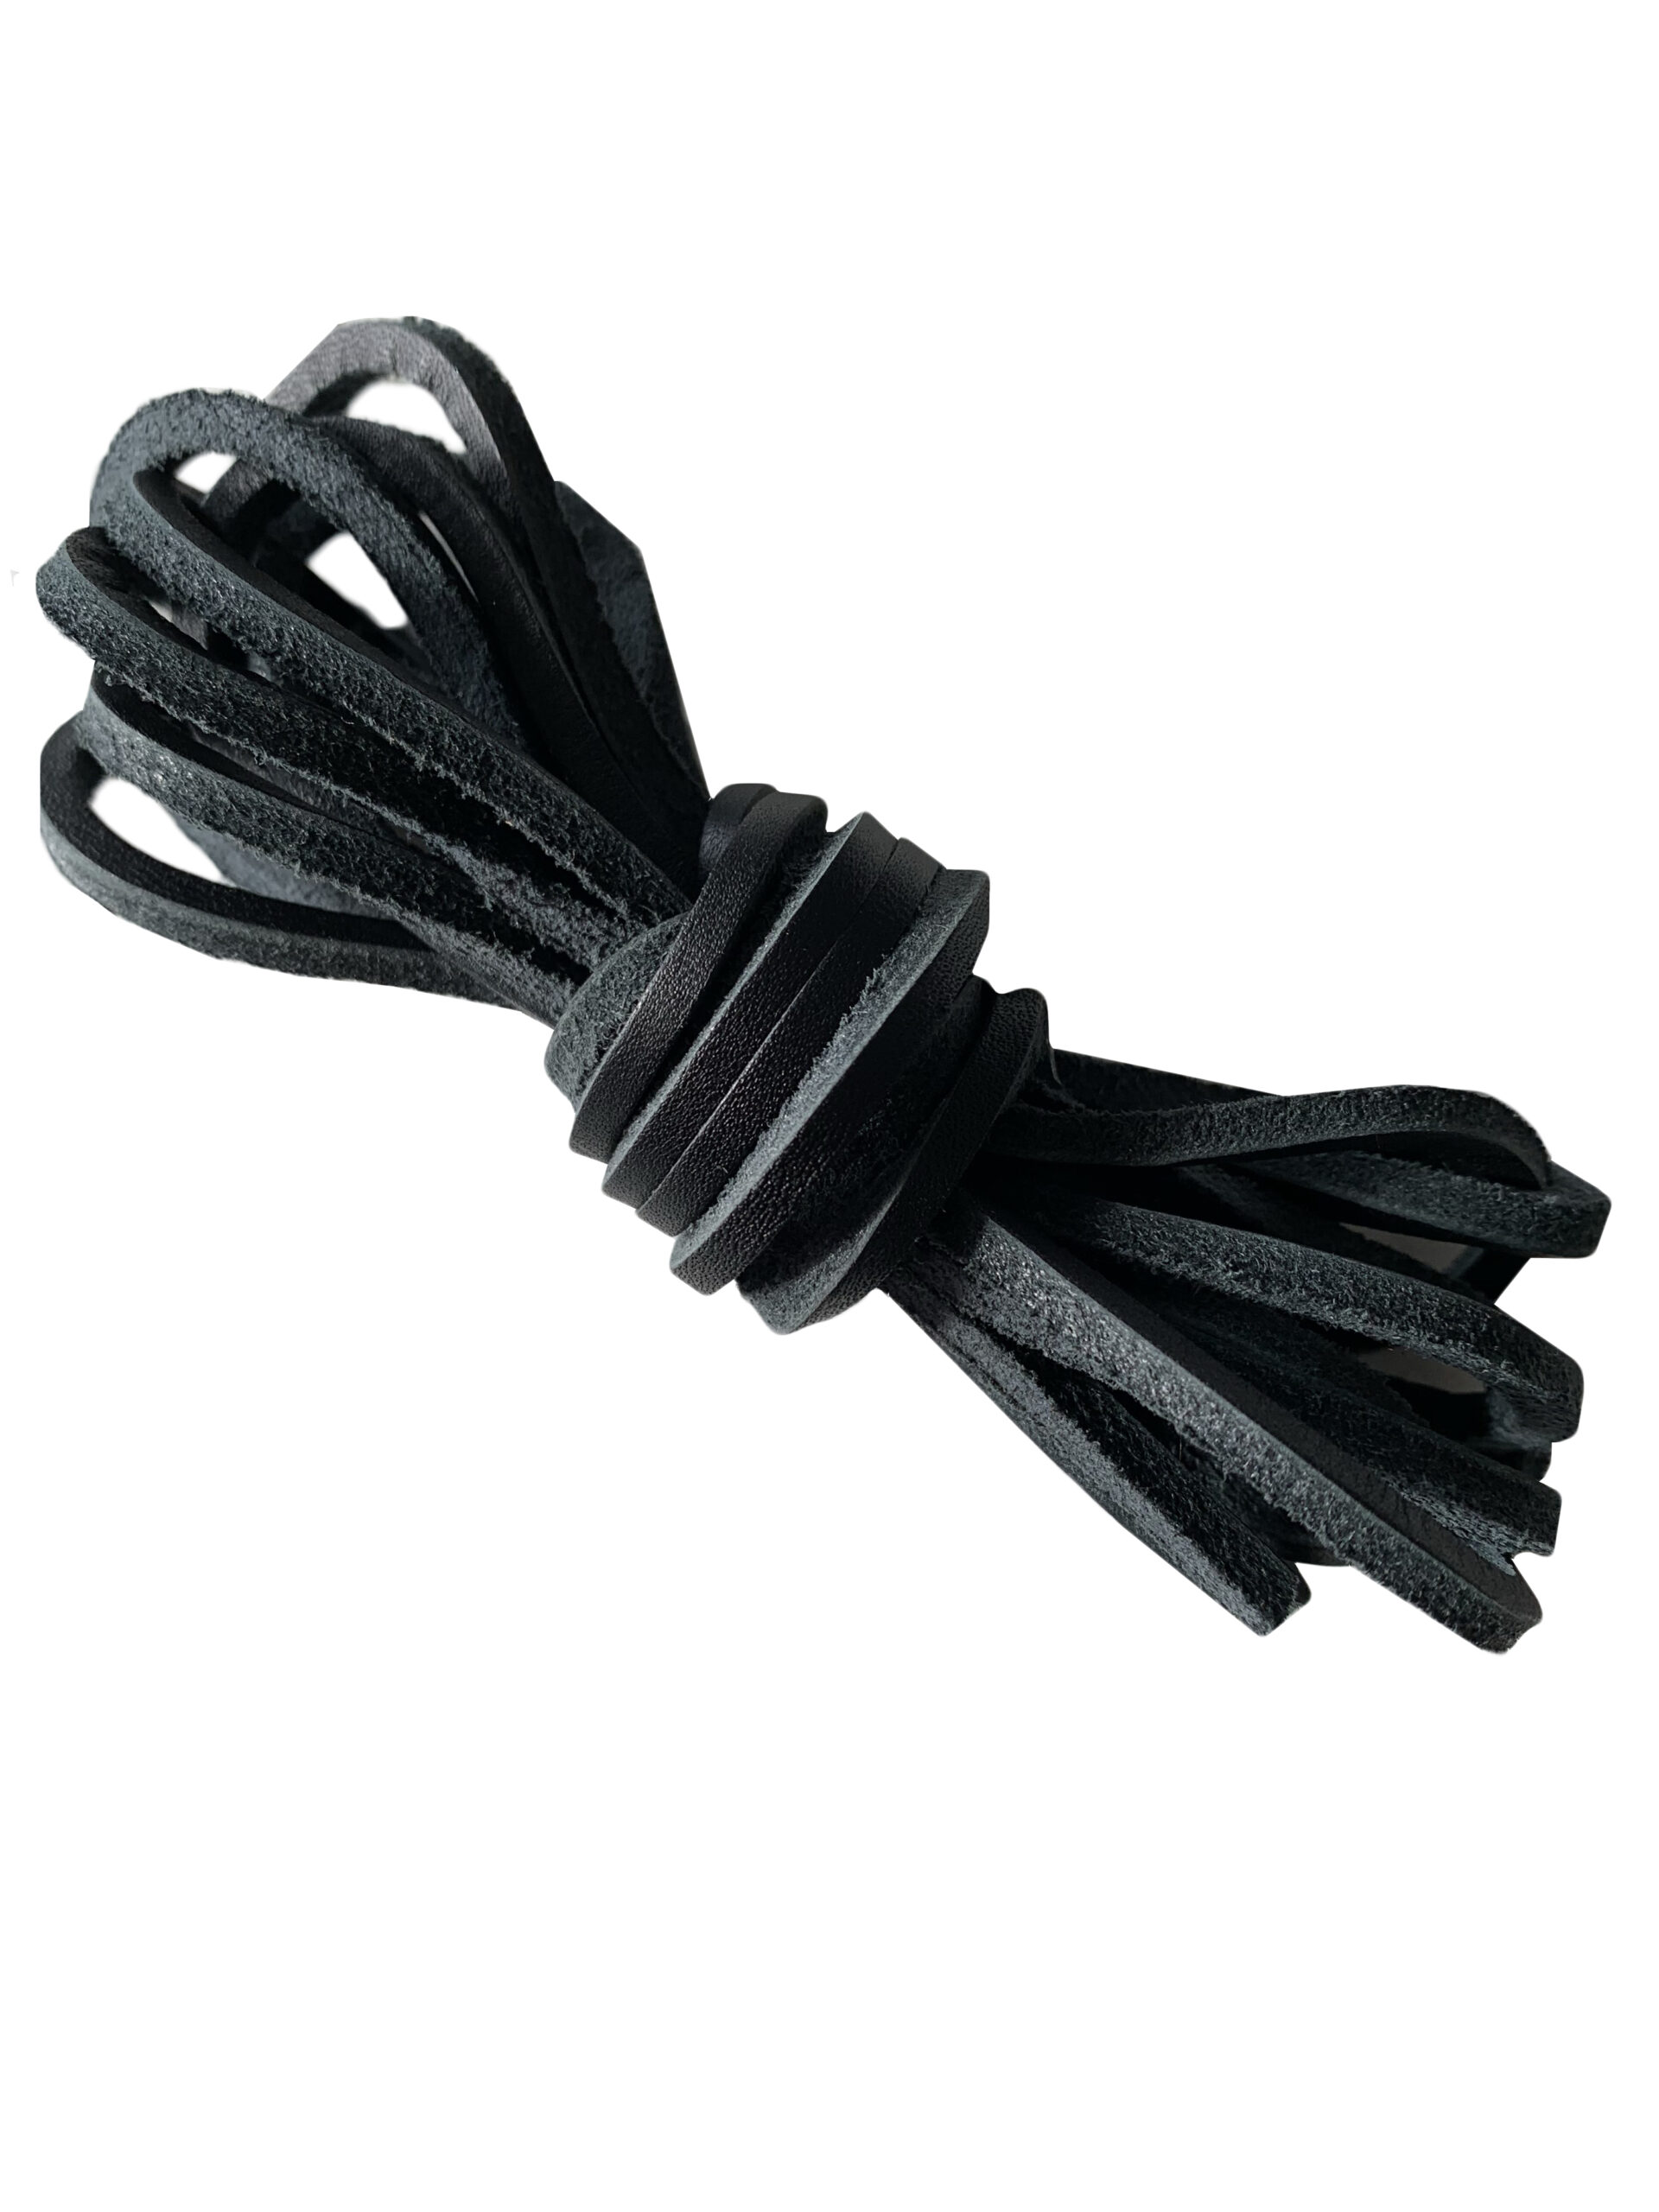 Black-Leather-Shoelaces-Boot-Laces-copy.jpg